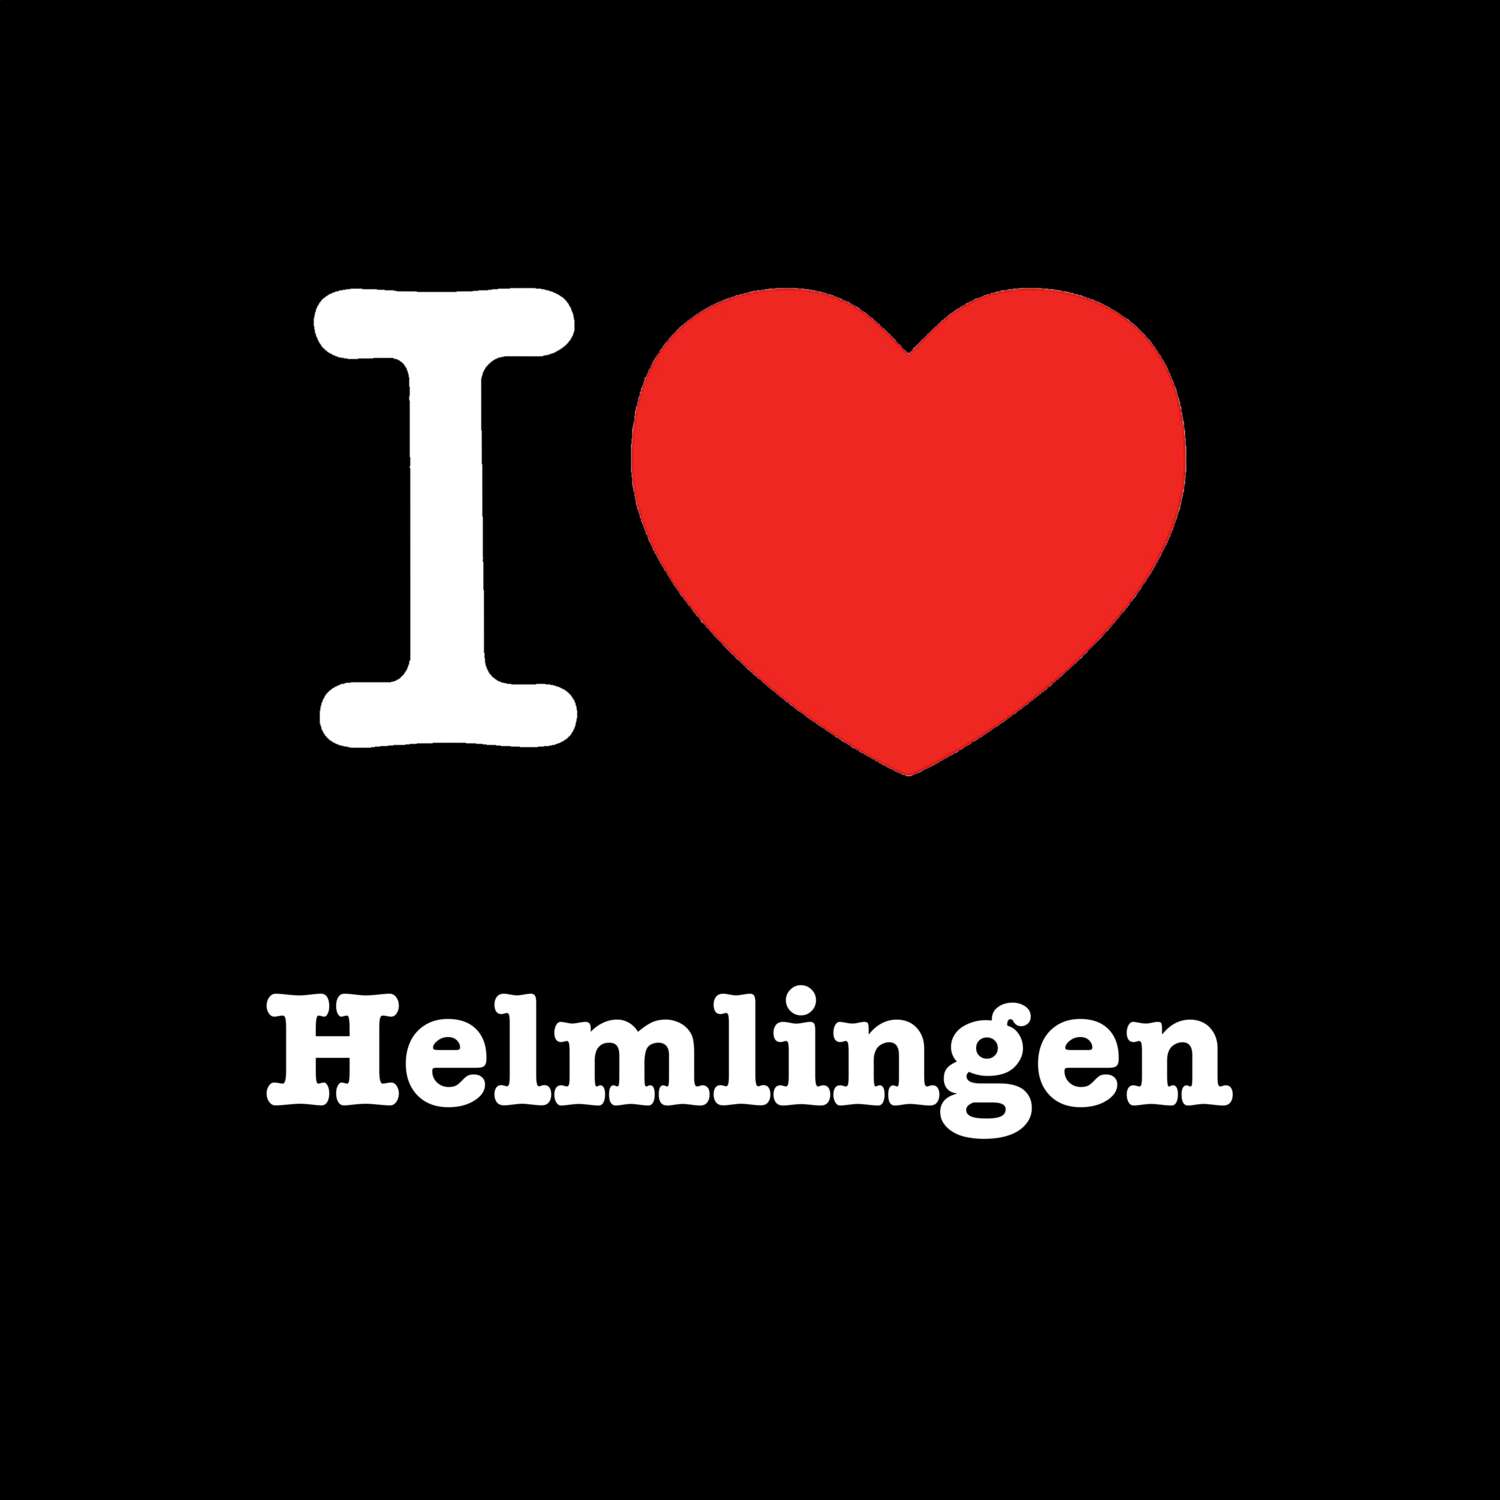 Helmlingen T-Shirt »I love«